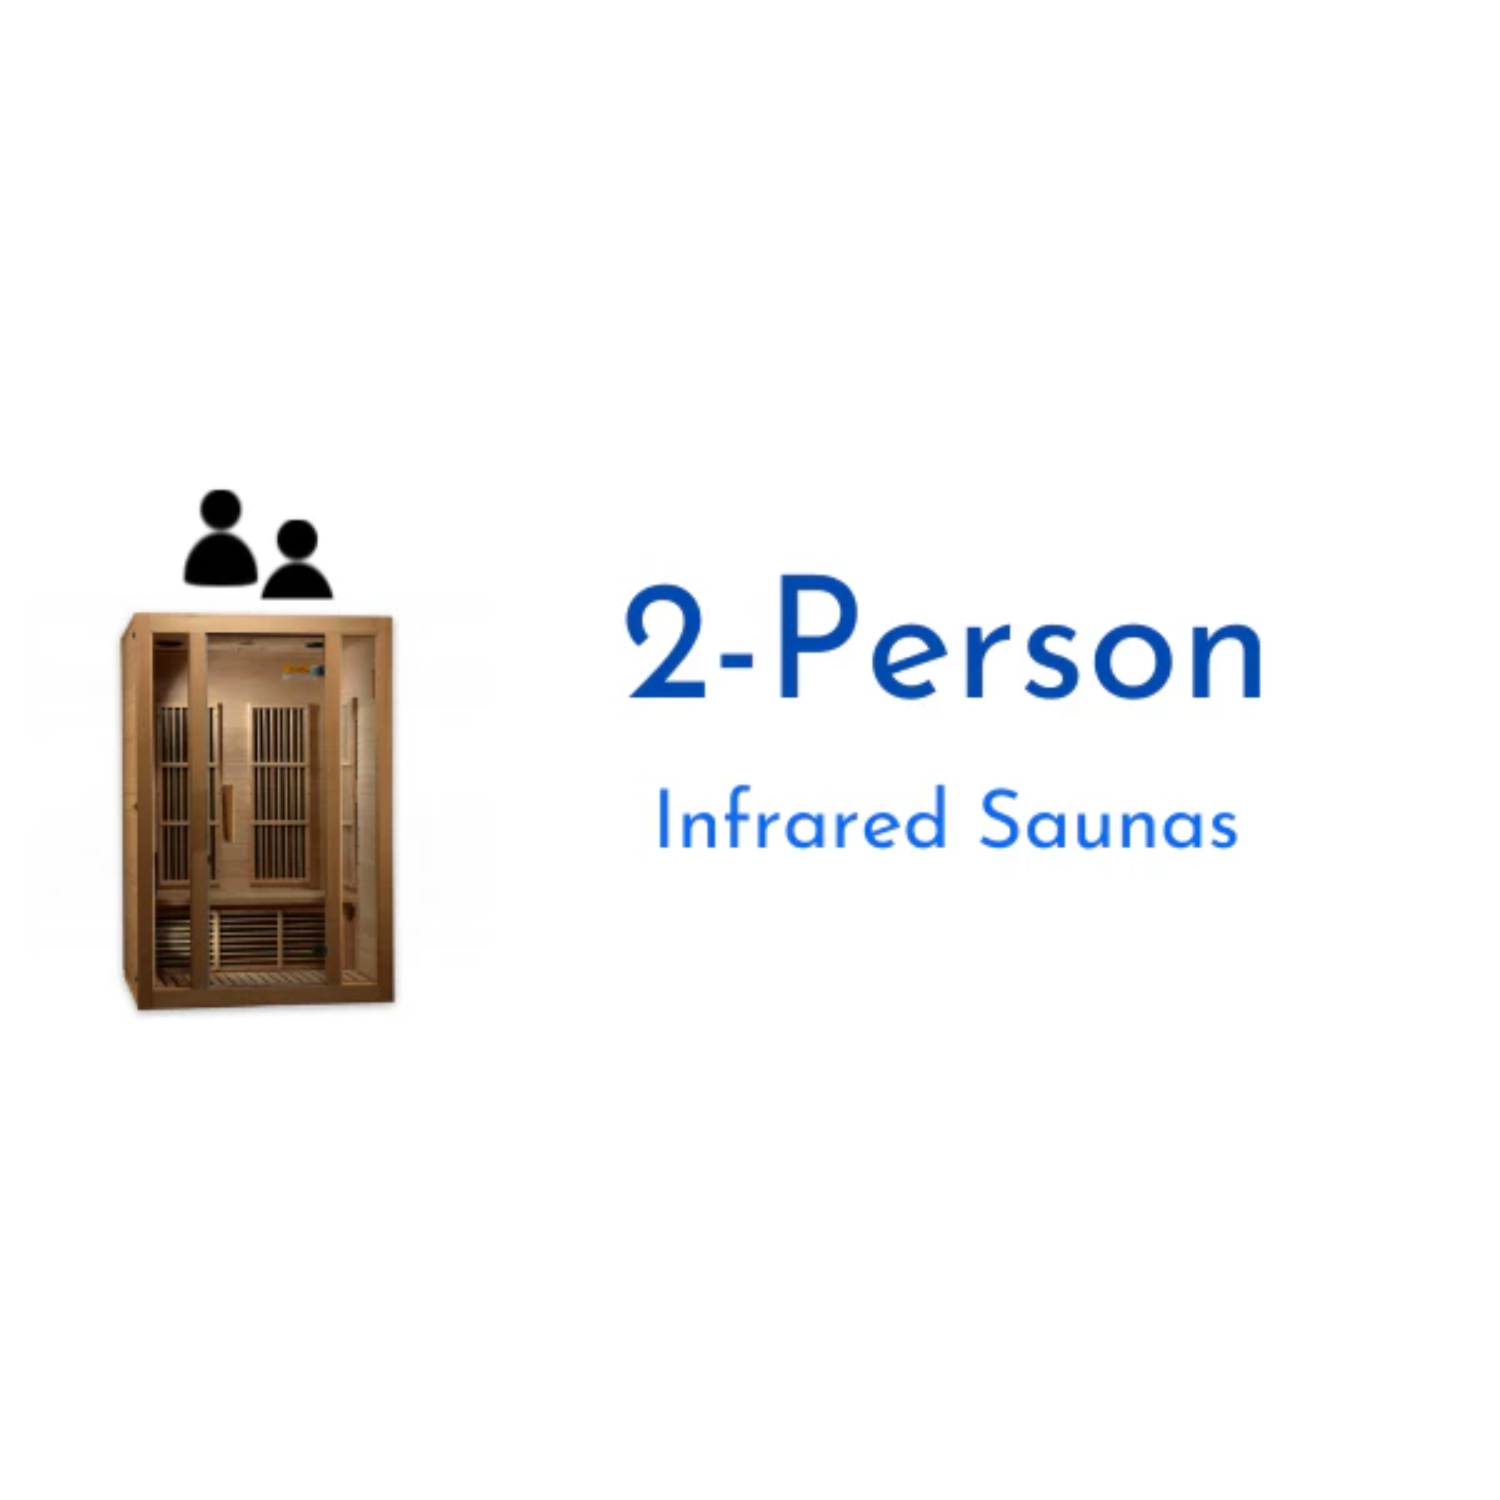 2-Person Infrared Saunas